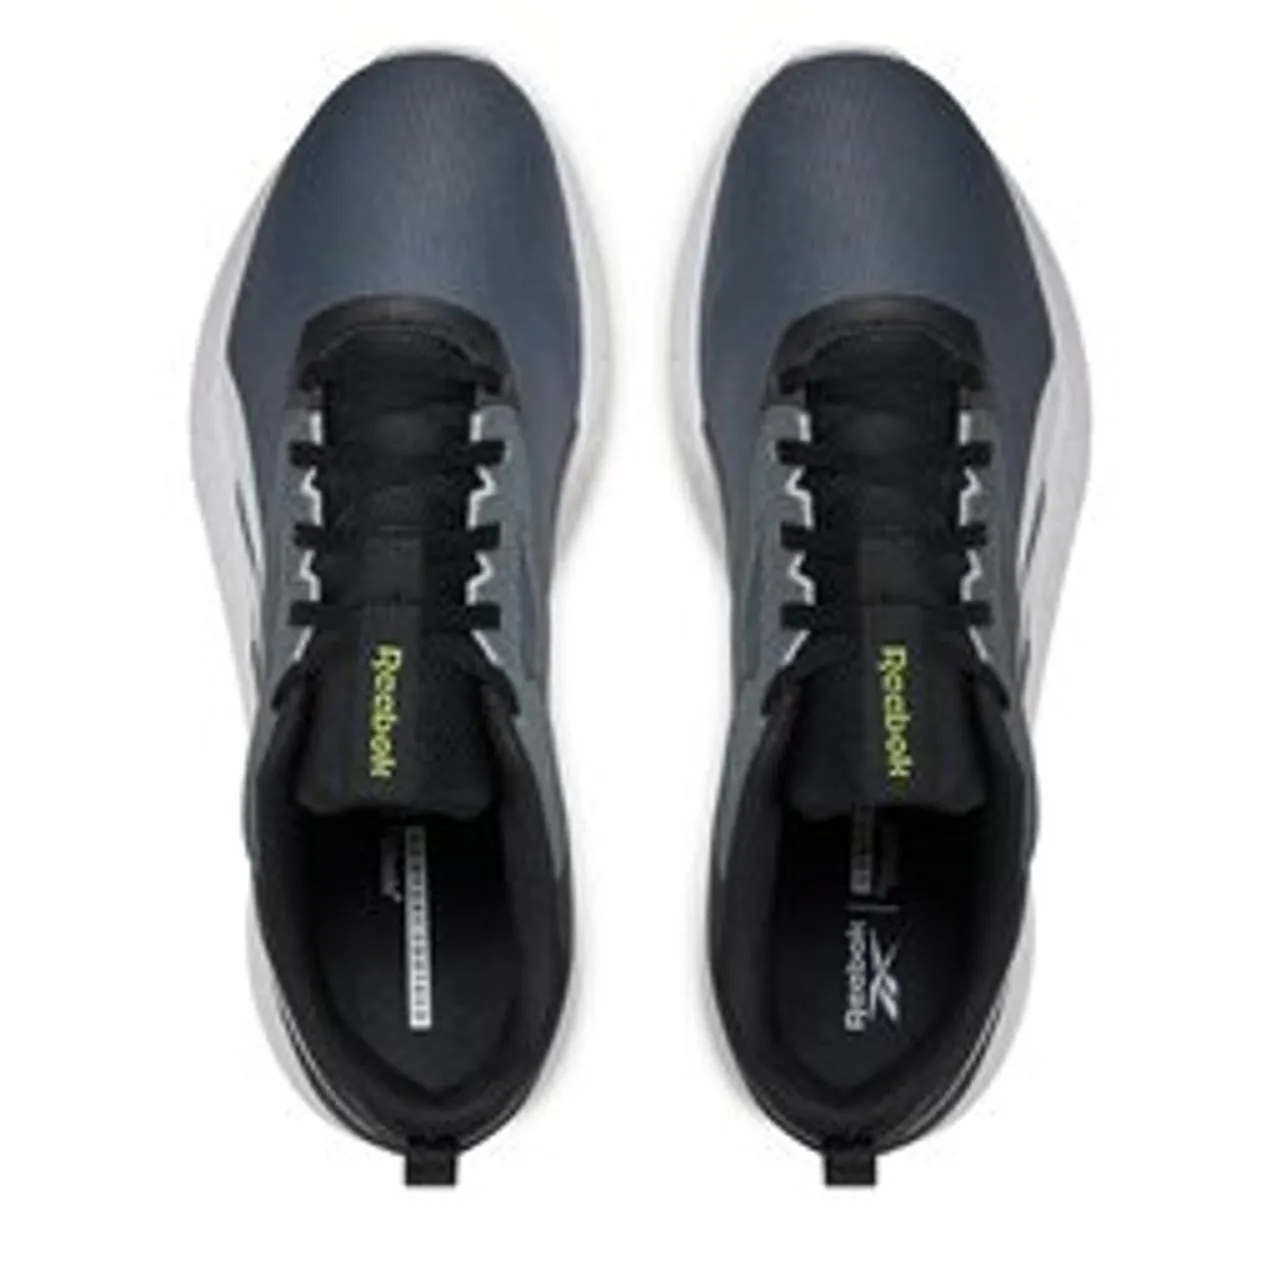 Schuhe Reebok Flexagon Energy 4 HP8015 Black